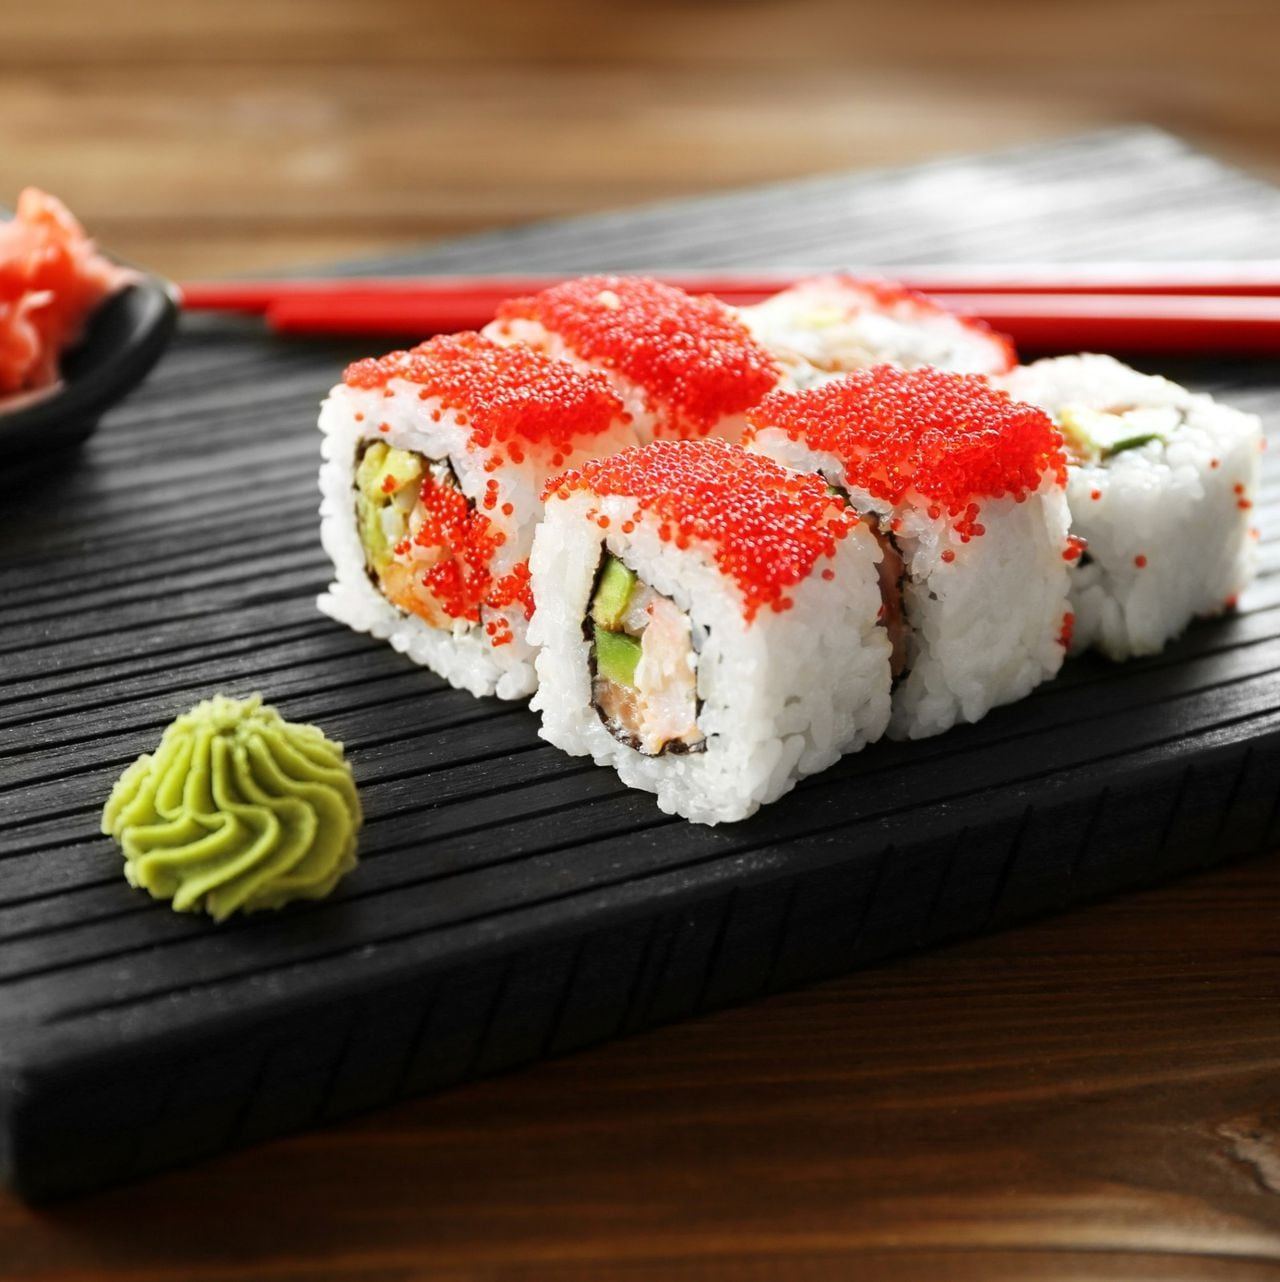 En Cali se celebra por cuarta vez el SushiFest, donde los restaurantes caleños presentarán sus recetas originales.